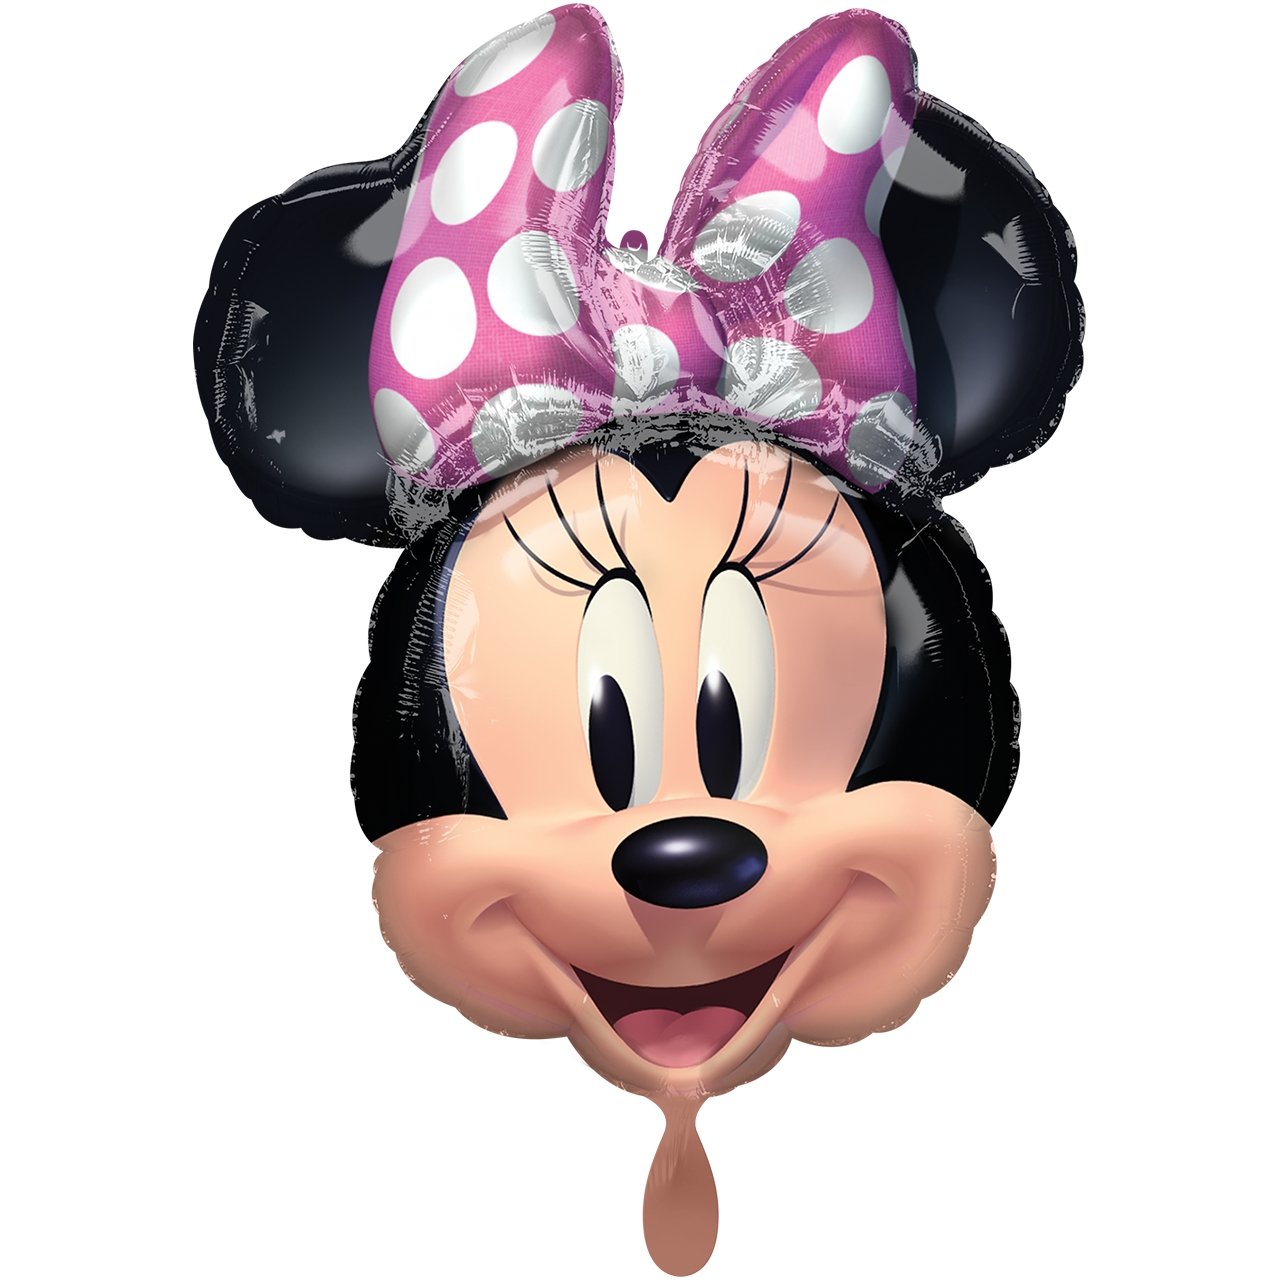 XXL Folienballon "Minnie Mouse" 66cm - Party im Karton